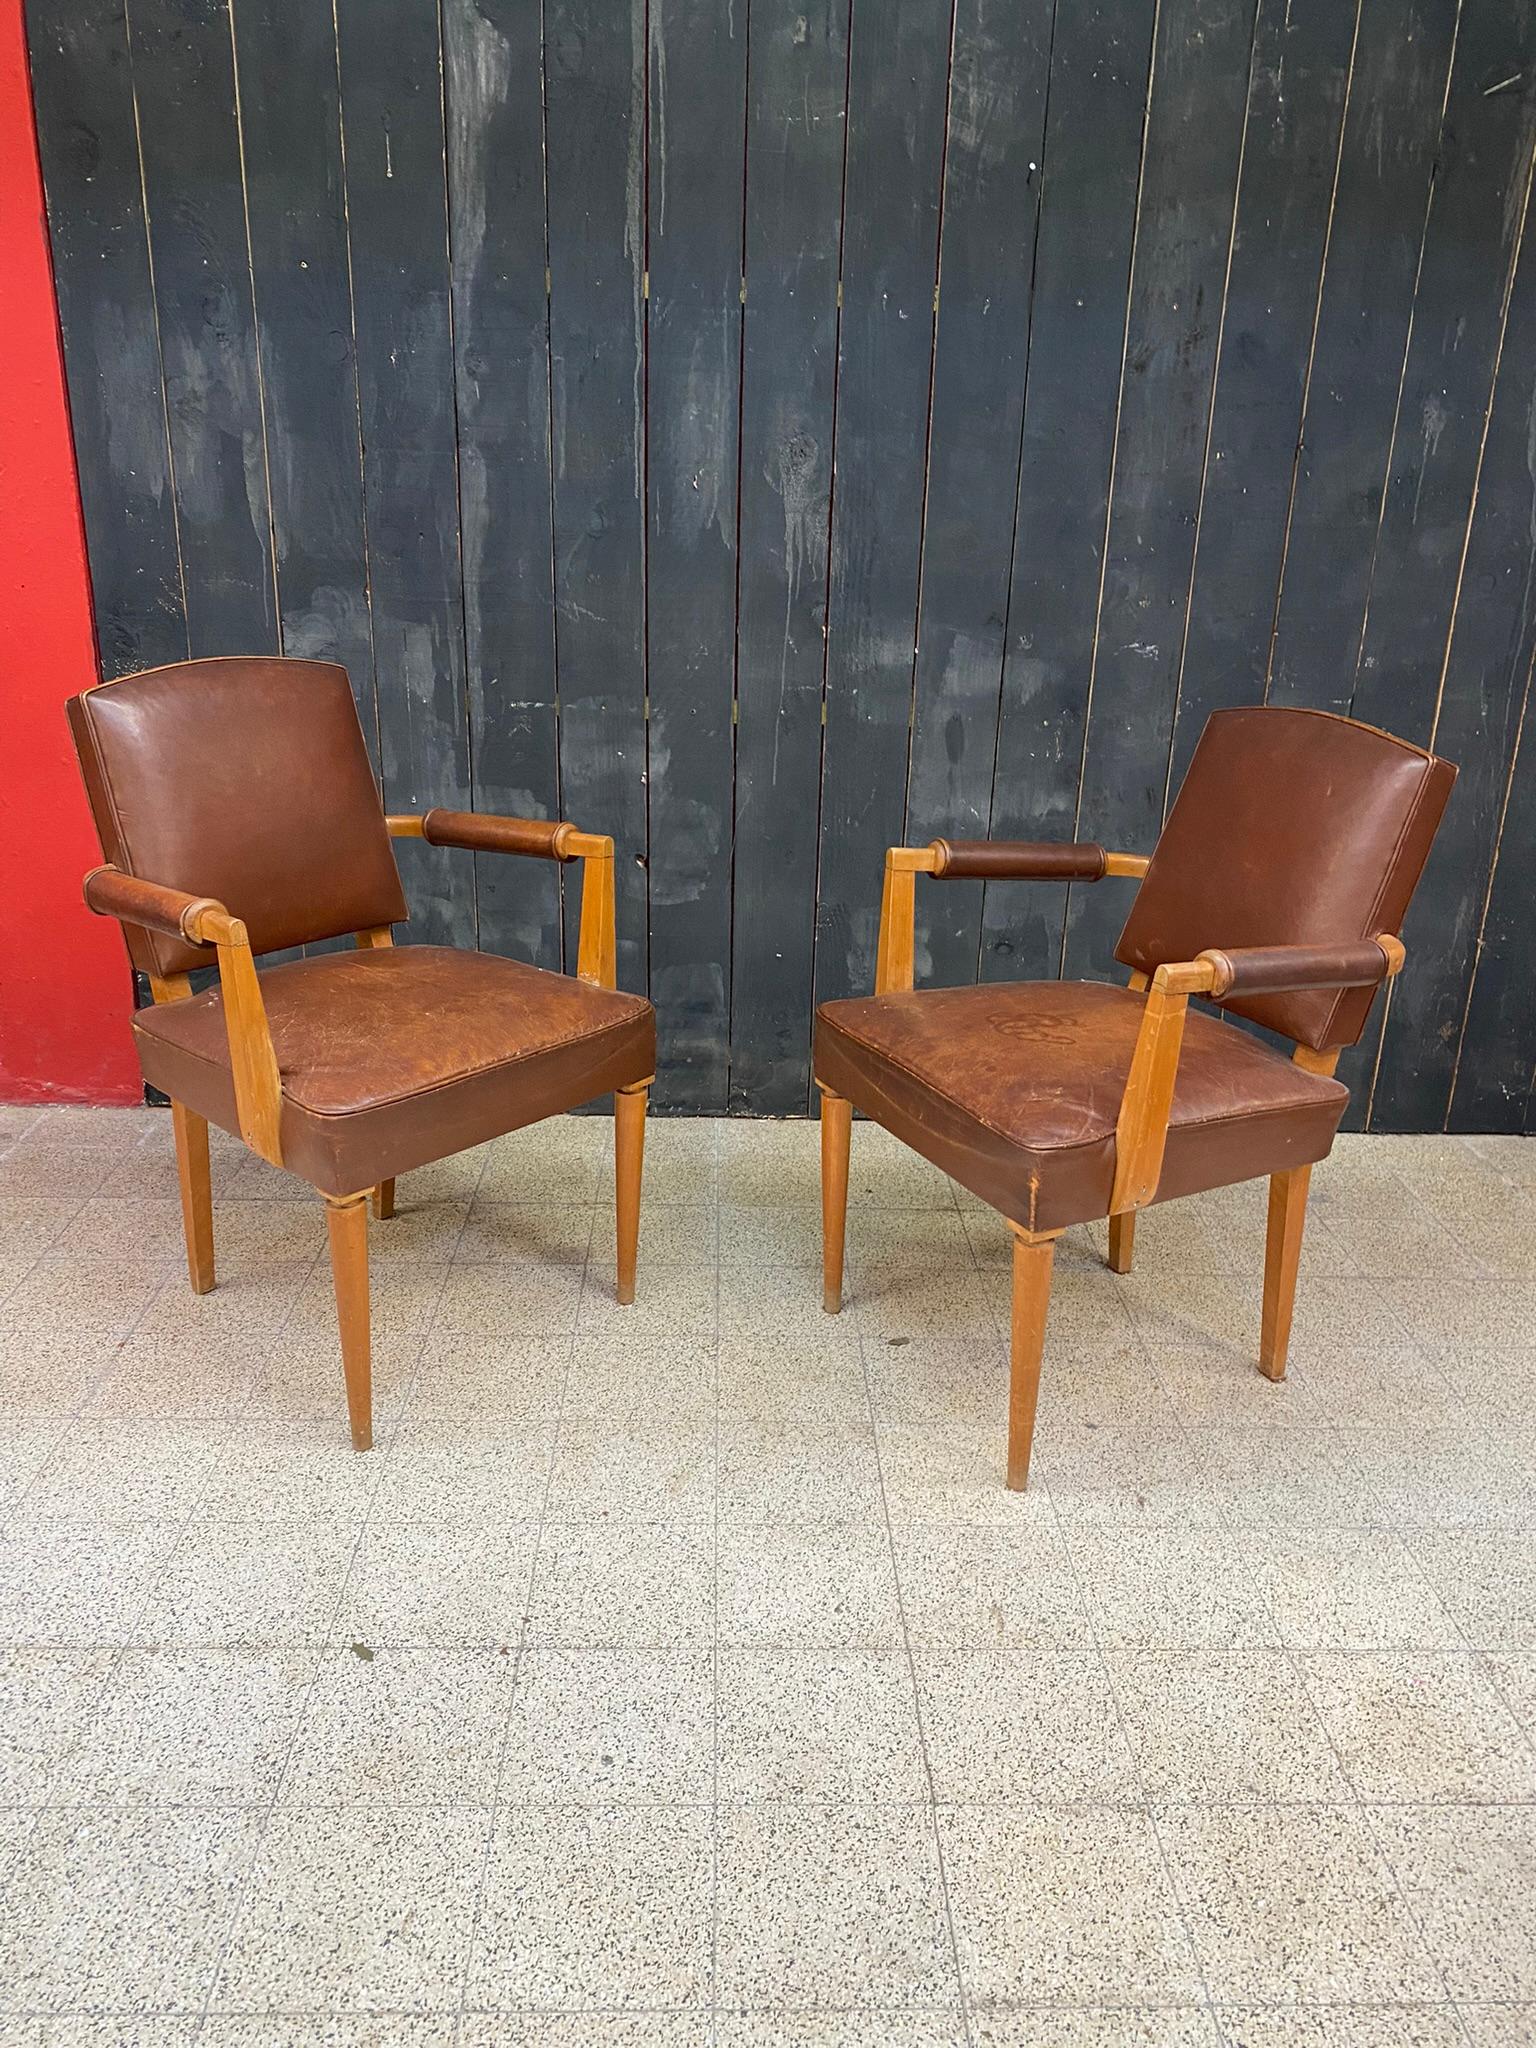 3 mit Leder bezogene Art-Deco-Sessel, um 1930
das Leder ist fleckig, aber nicht gerissen, sehr korrekter Allgemeinzustand, schöne Patina;
der Preis ist für 1, der Käufer kann 1, 2 oder 3 Sessel kaufen